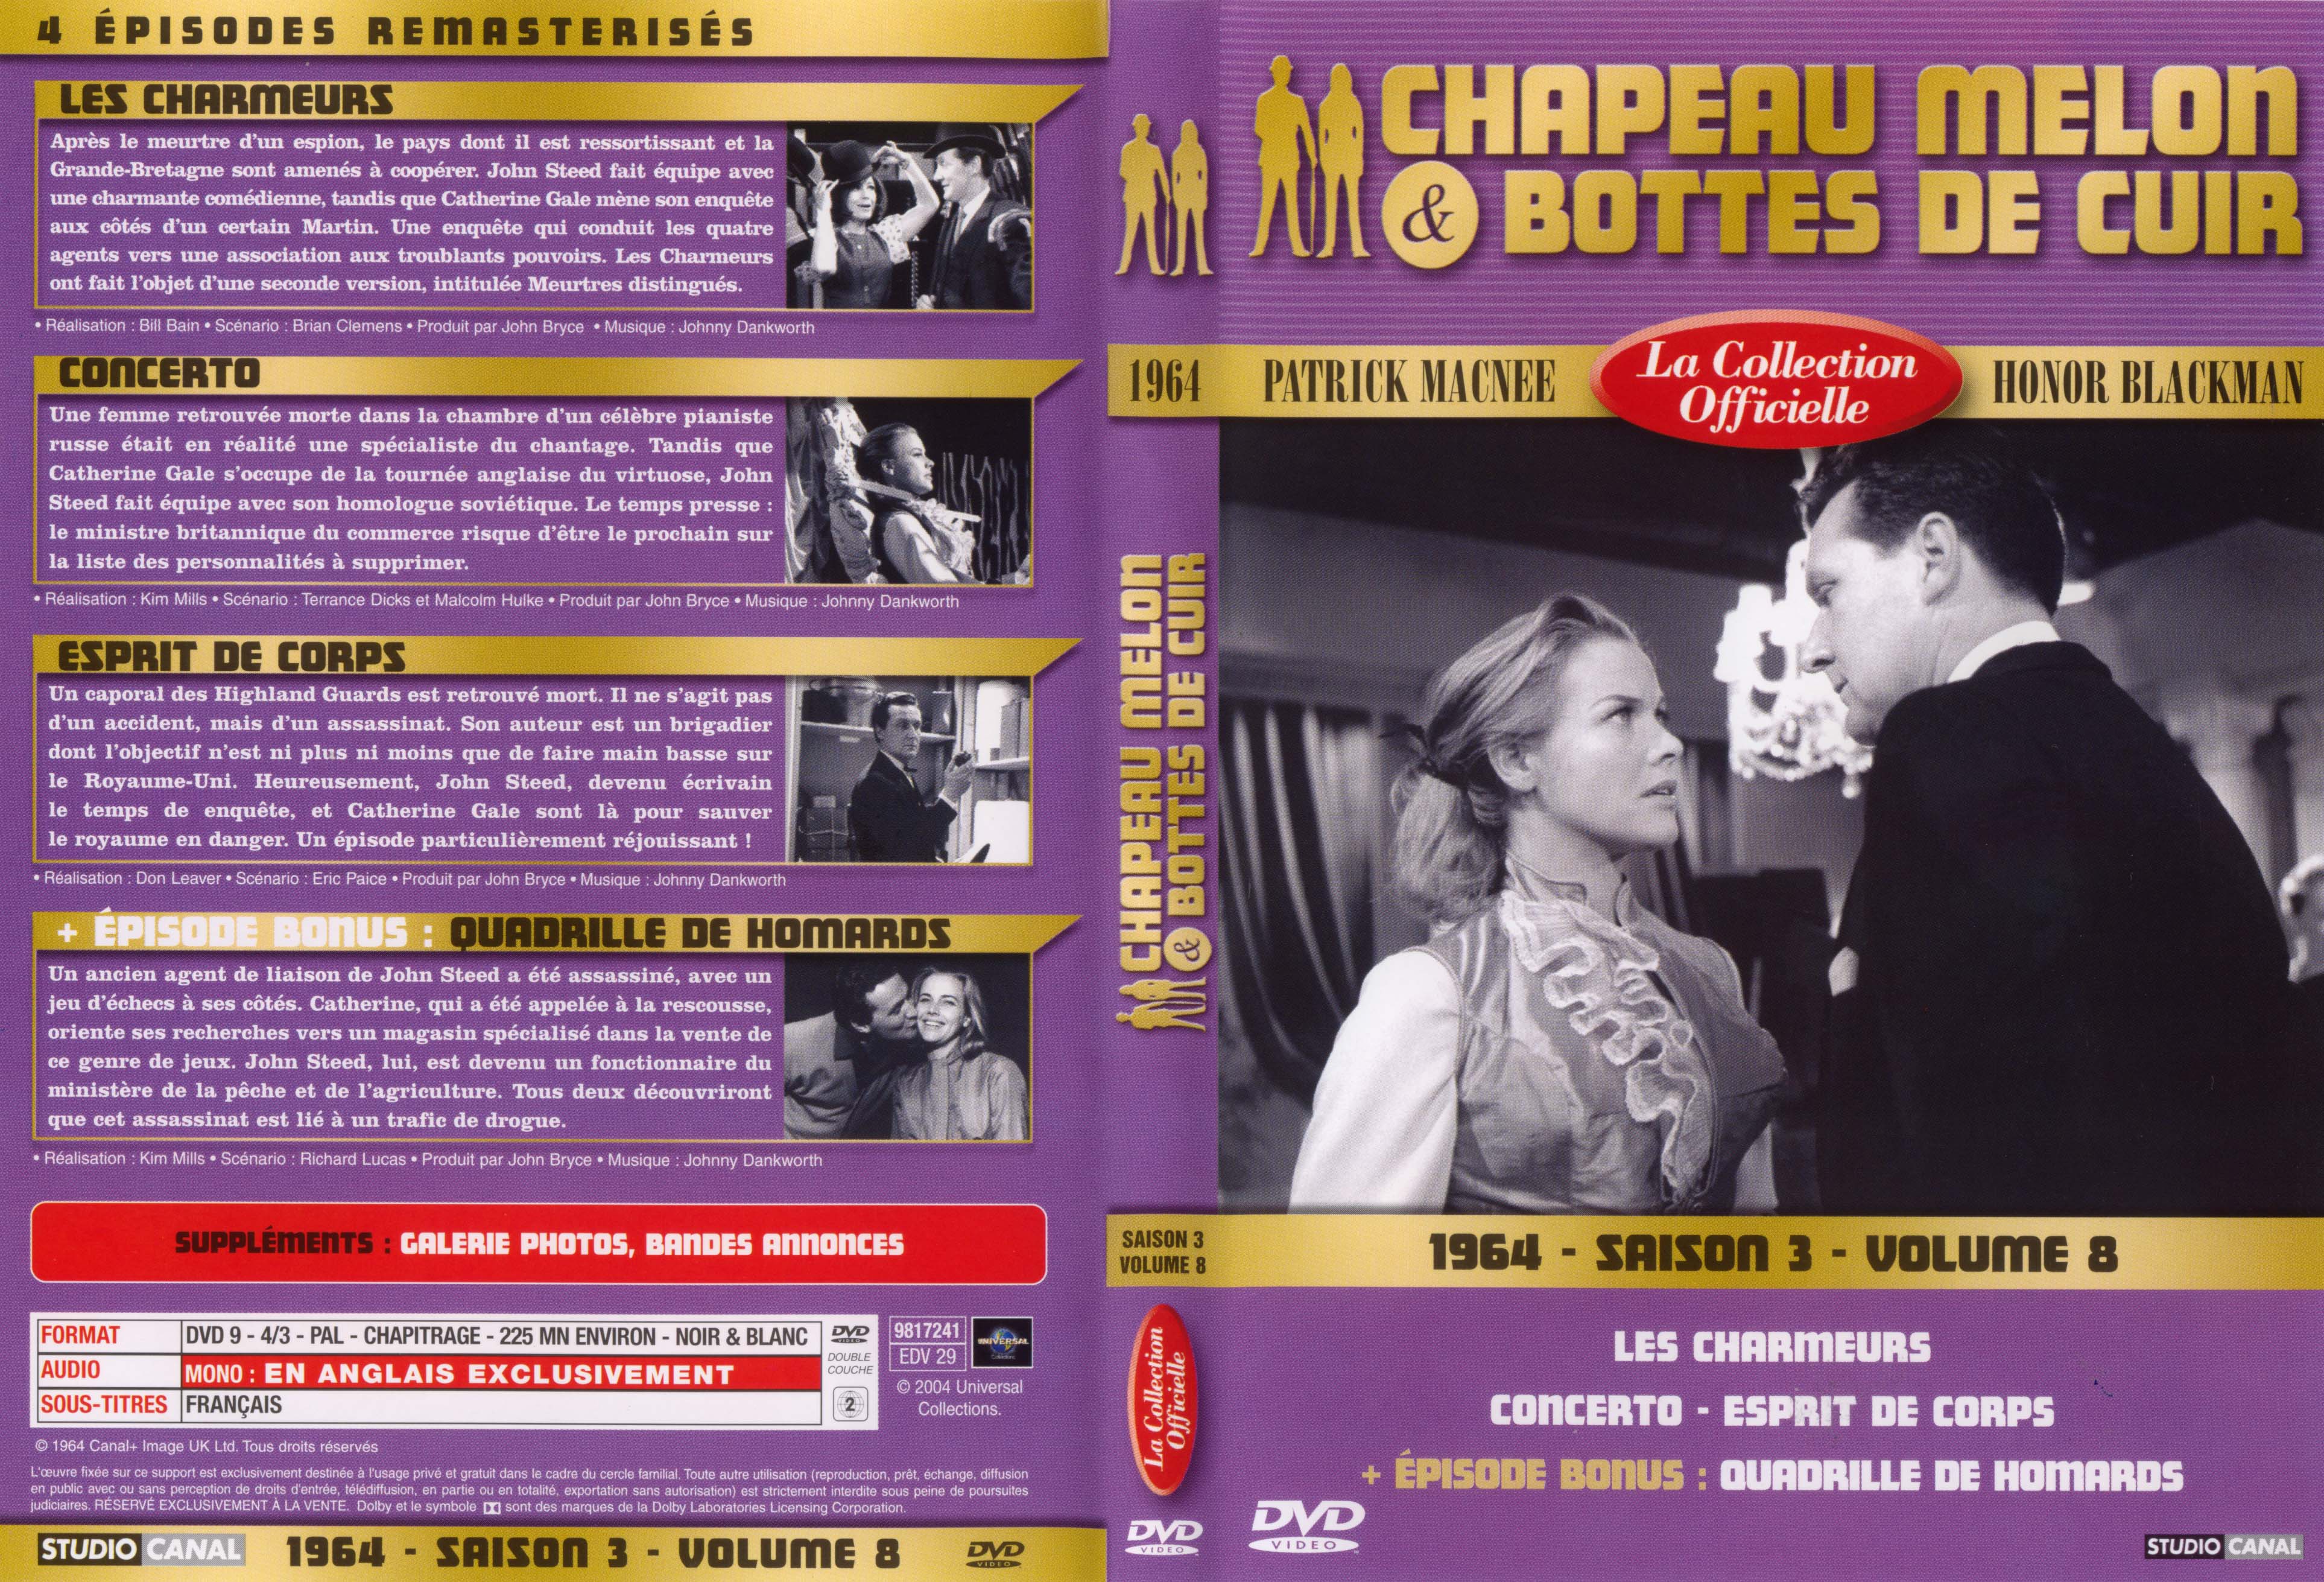 Jaquette DVD Chapeau melon et bottes de cuir 1964 saison 3 vol 8